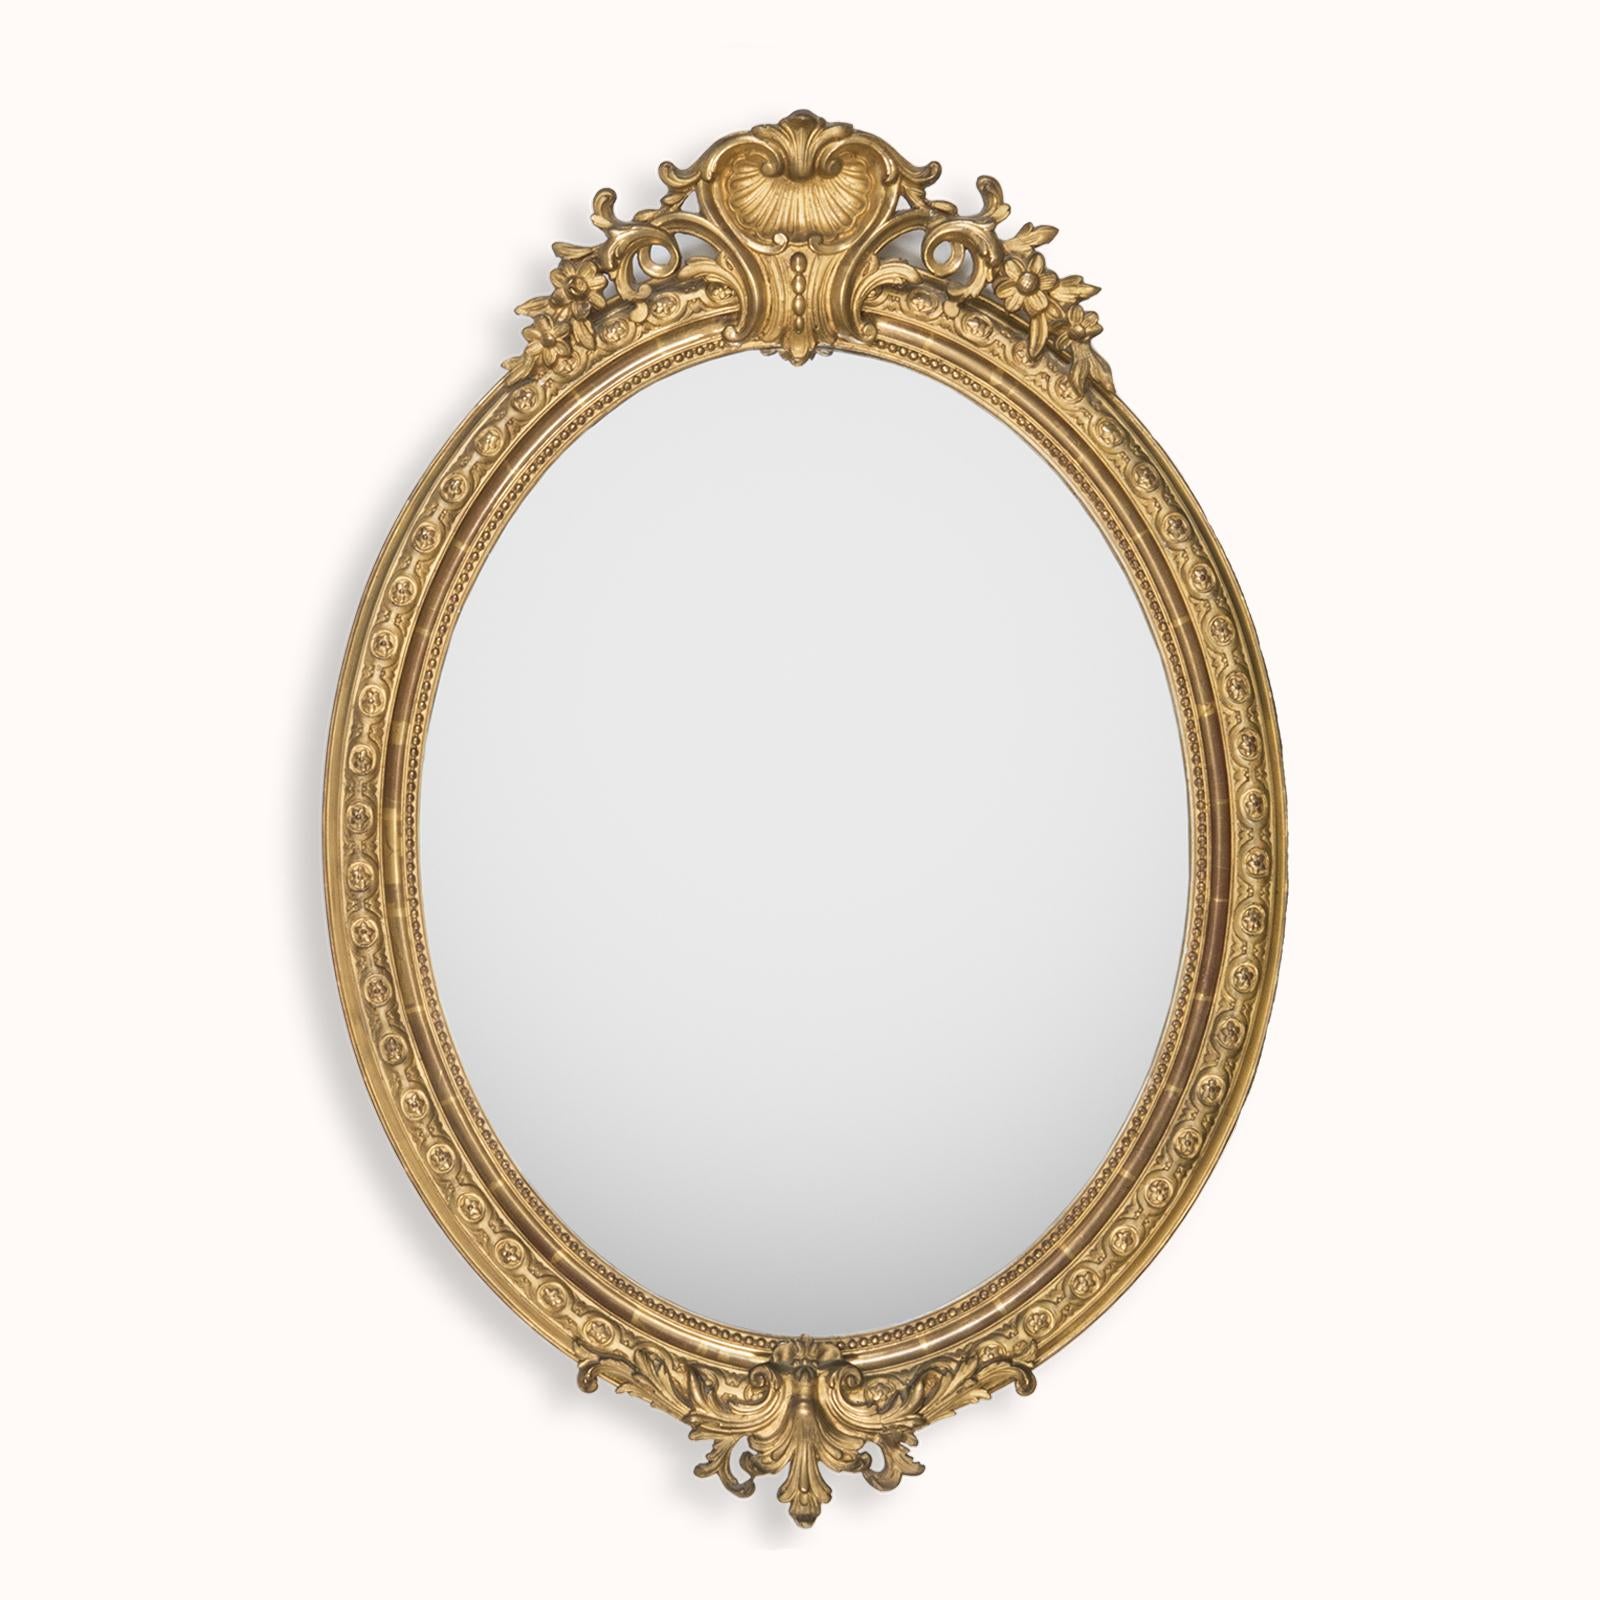 Schöner antiker französischer ovaler vergoldeter Spiegel aus dem 19. Jahrhundert, verziert mit einem muschelförmigen Wappen.

Sehen Sie sich die Schönheit dieses antiken französischen ovalen Spiegels an, ein zeitloses Stück, das in Frankreich um das